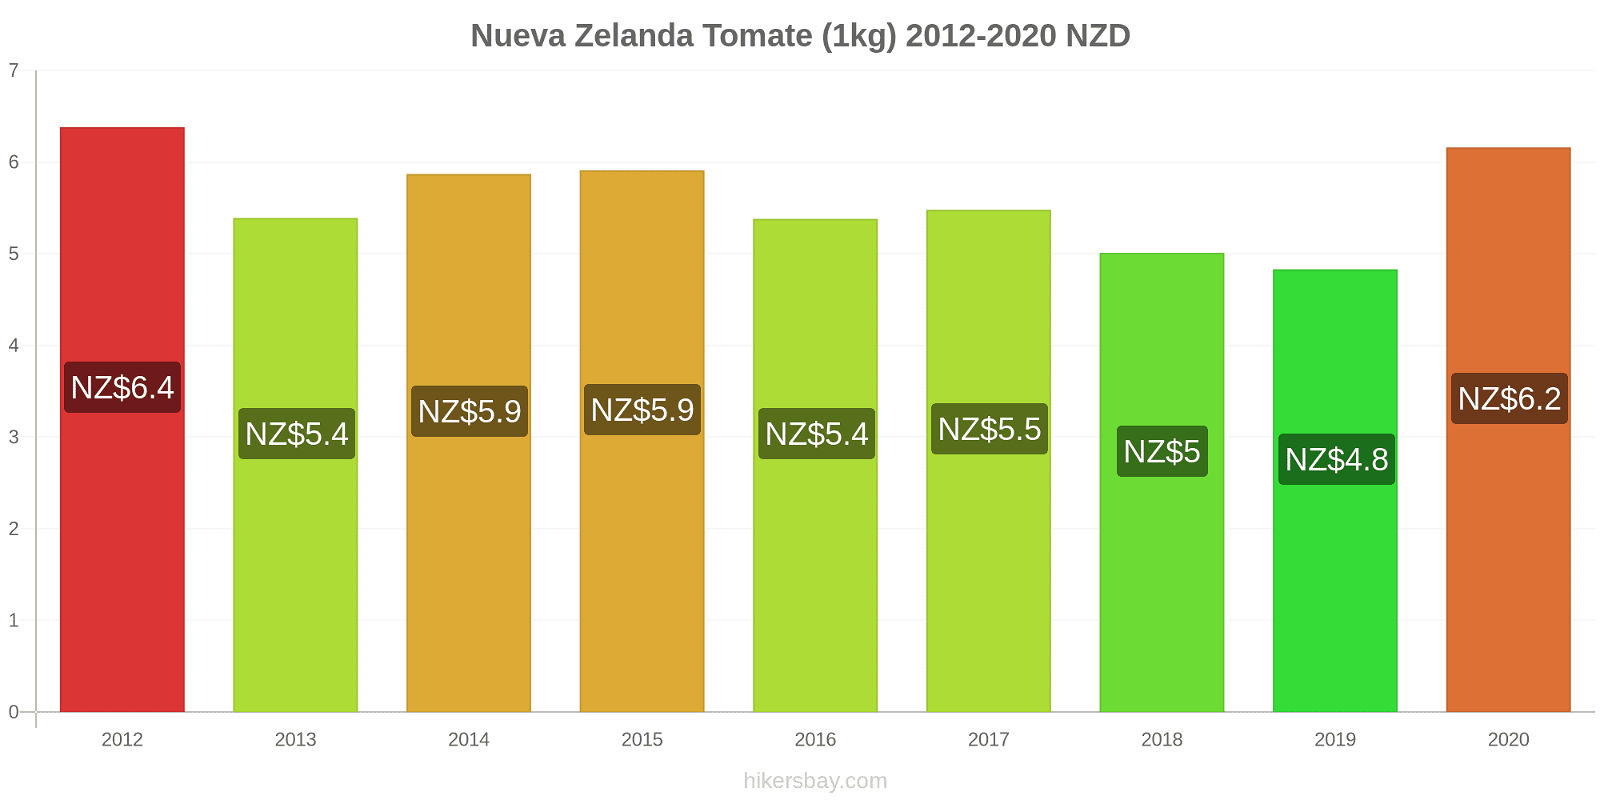 Nueva Zelanda cambios de precios Tomate (1kg) hikersbay.com